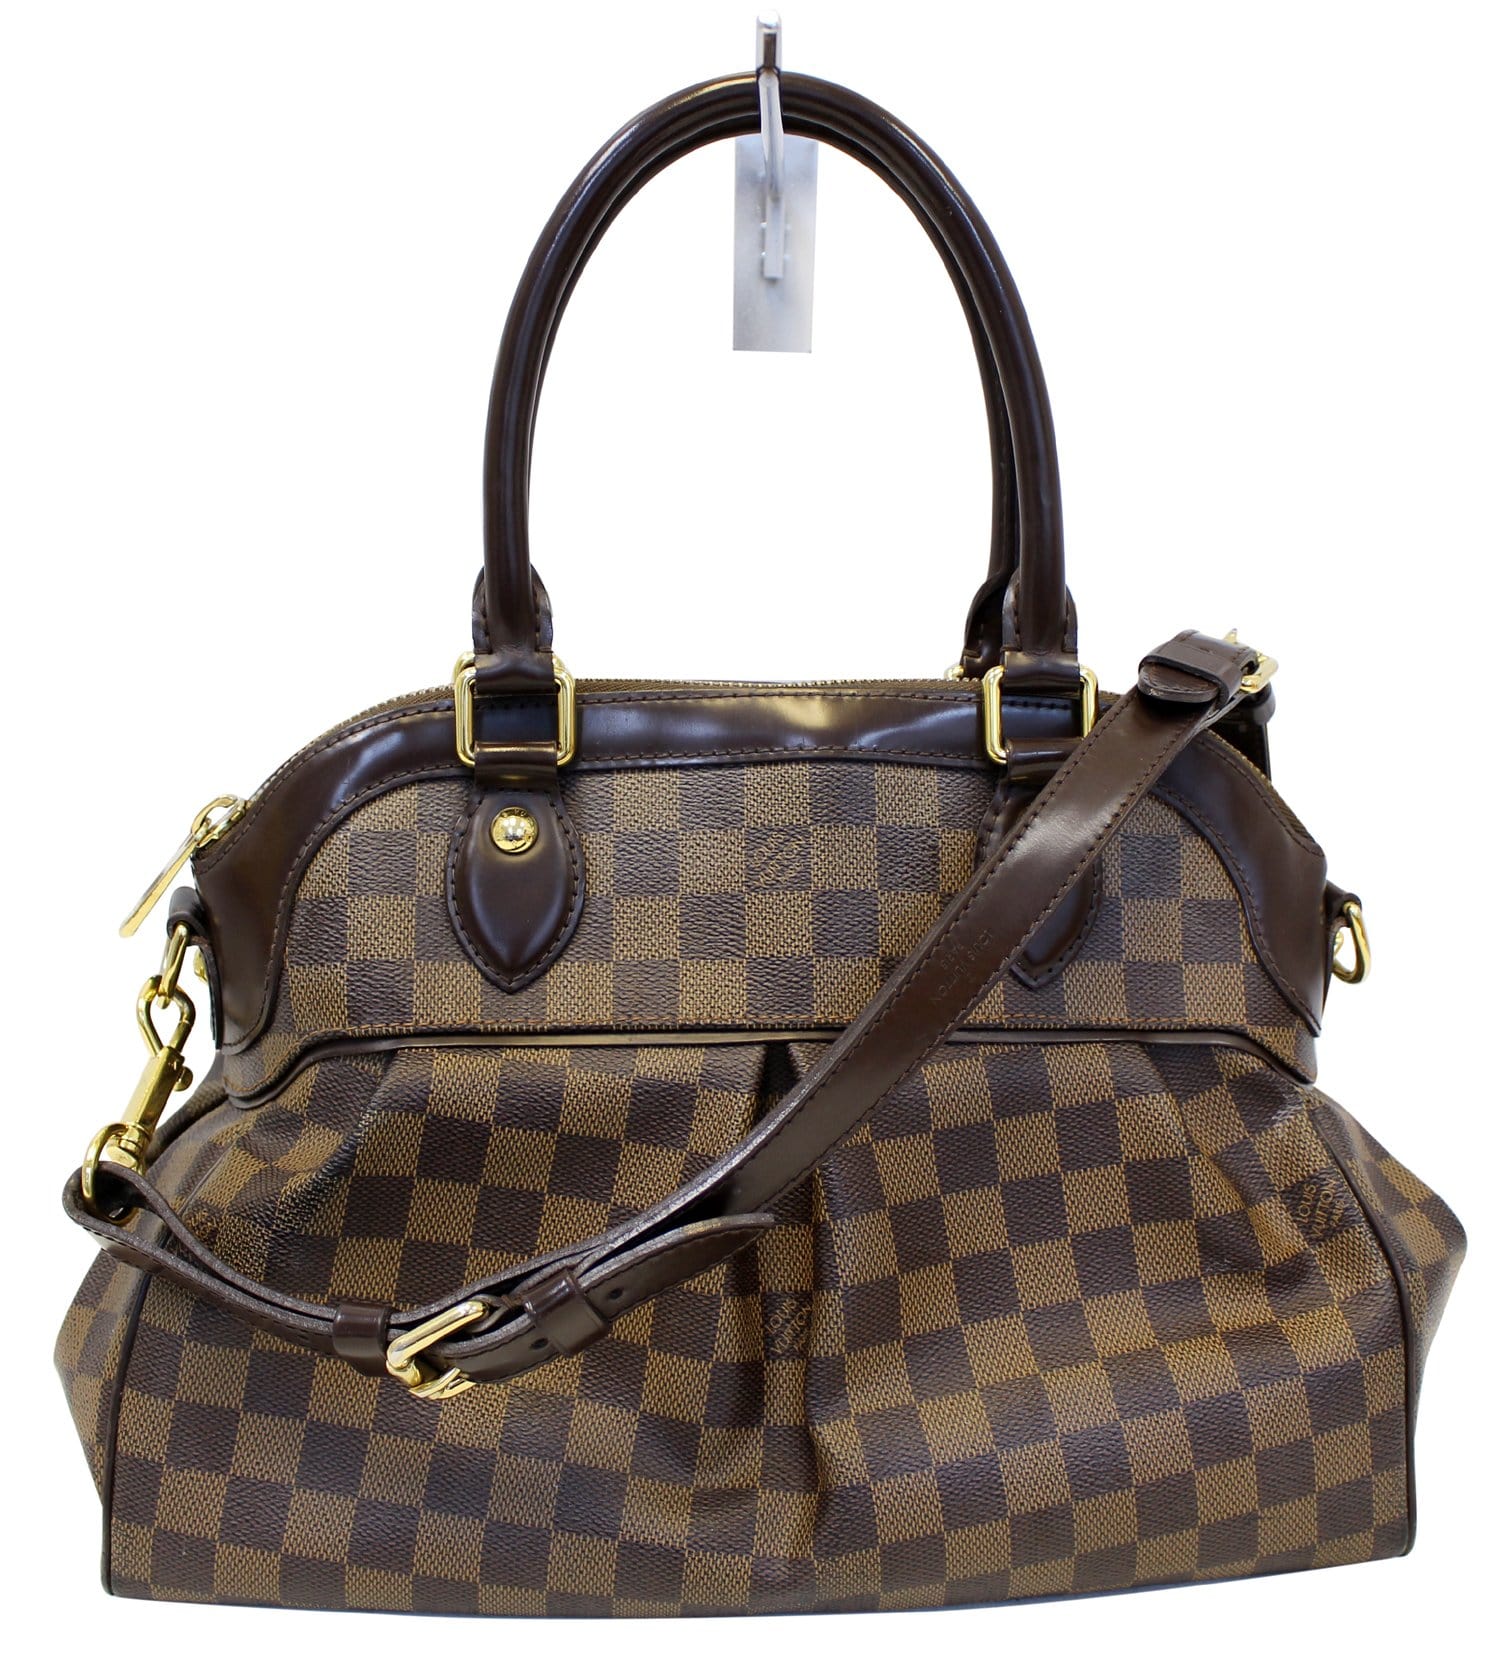 Gorgeous Authentic Louis Vuitton Damier Ebene Favorite PM Crossbody Bag